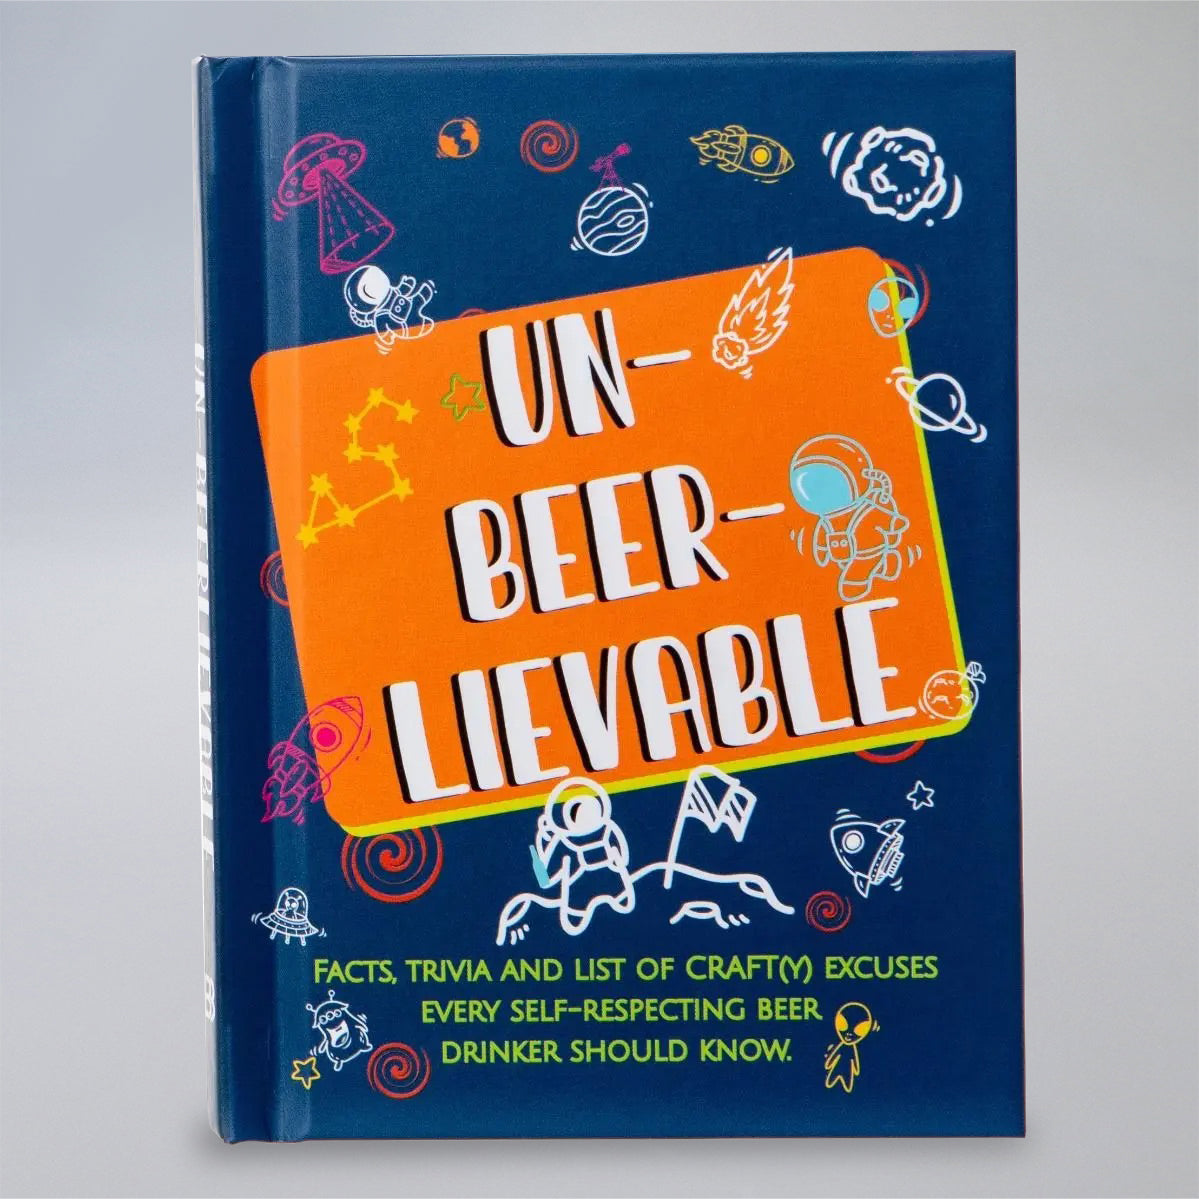 Un-beer-lievable' Beer Book